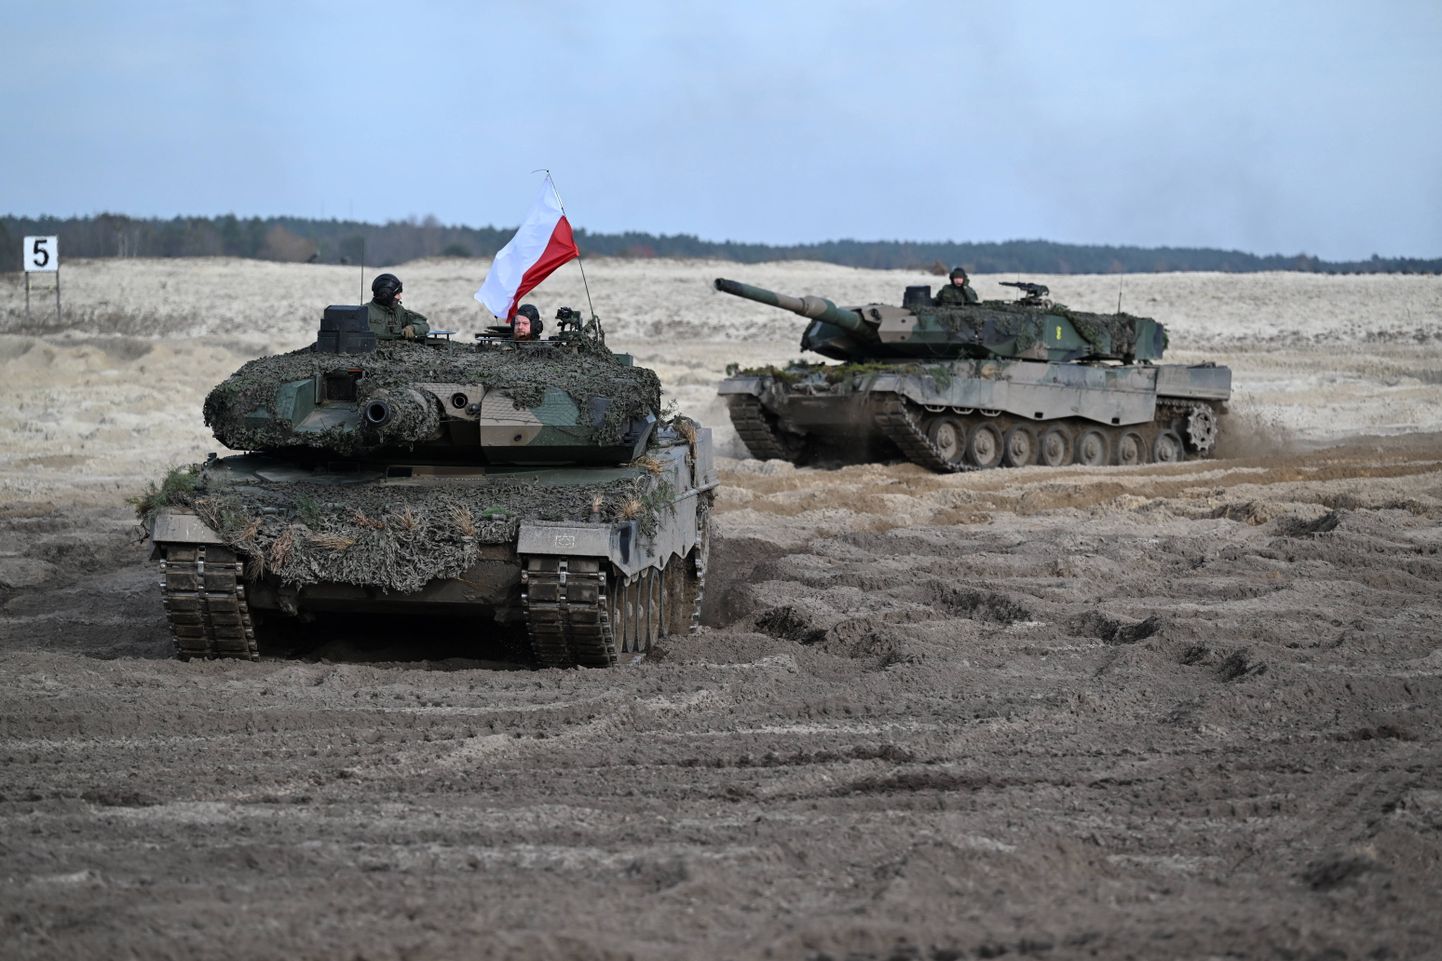 Poola kaitseväelased ja Leopard 2 tankid 9. novembril 2022 õppusel Kagu-Poolas Now Debas